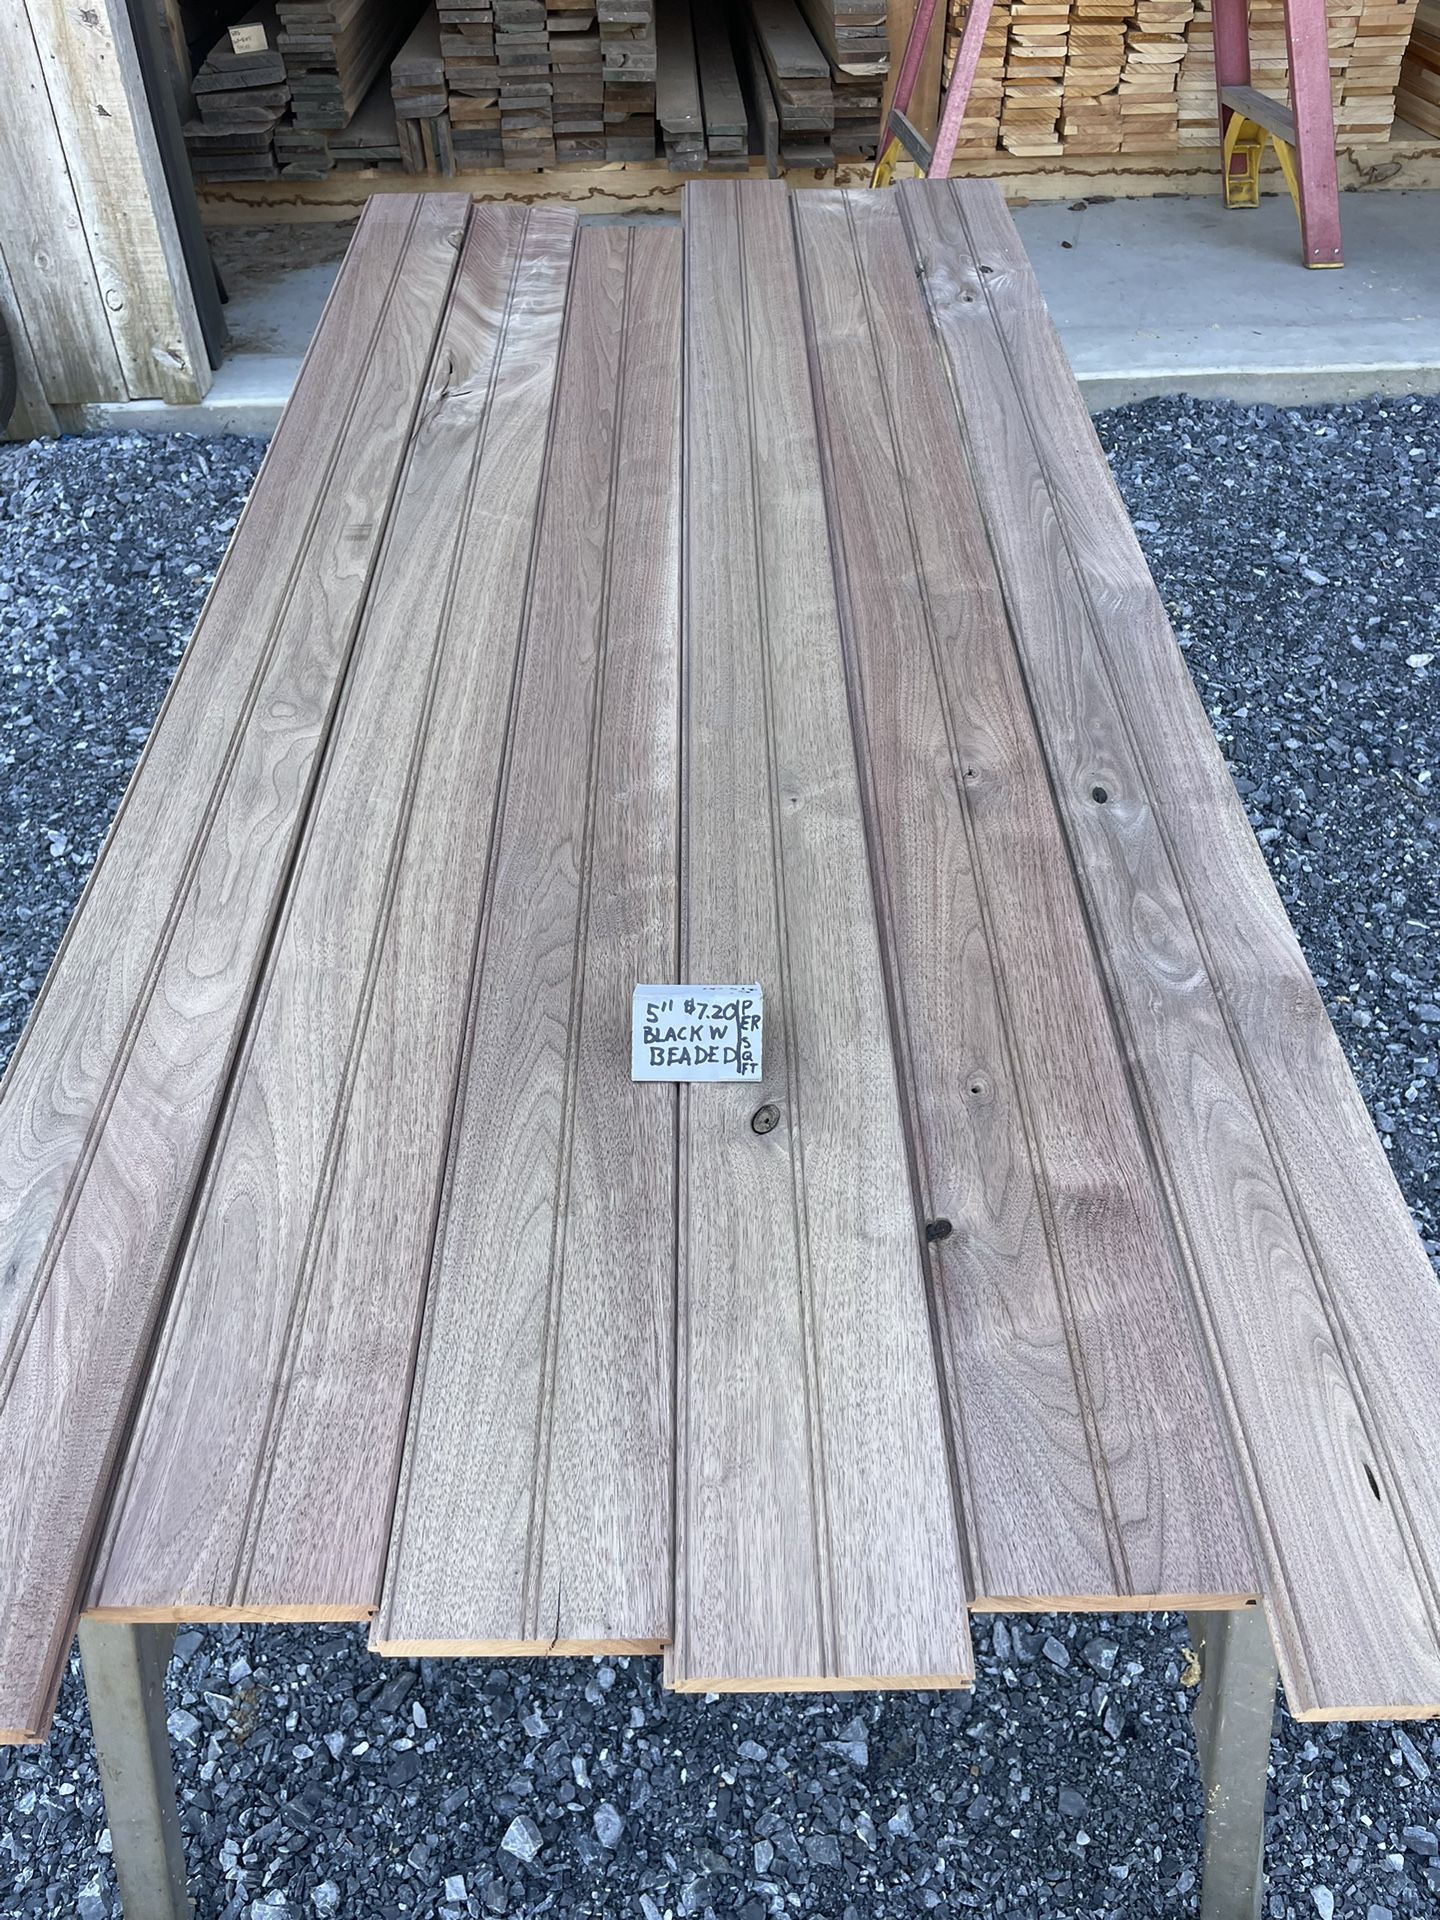 3/4x5x5-7’ Beaded T&G Black Walnut Lumber